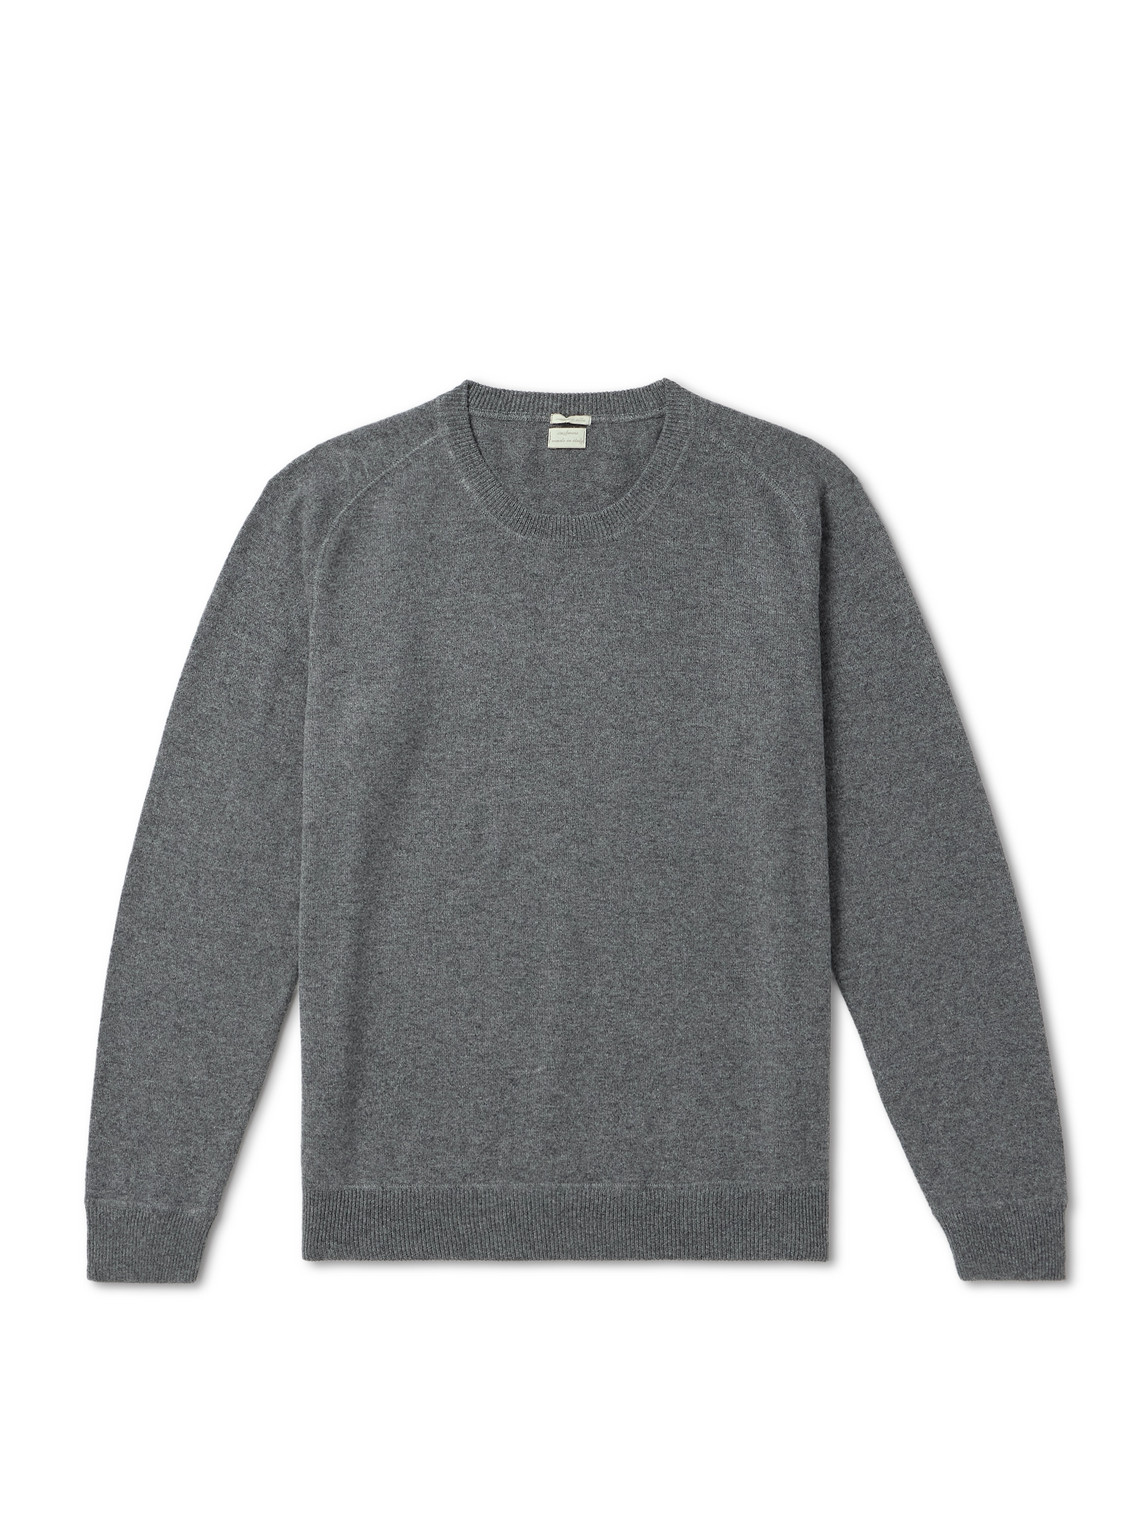 Massimo Alba Sport Cashmere Sweater In Gray